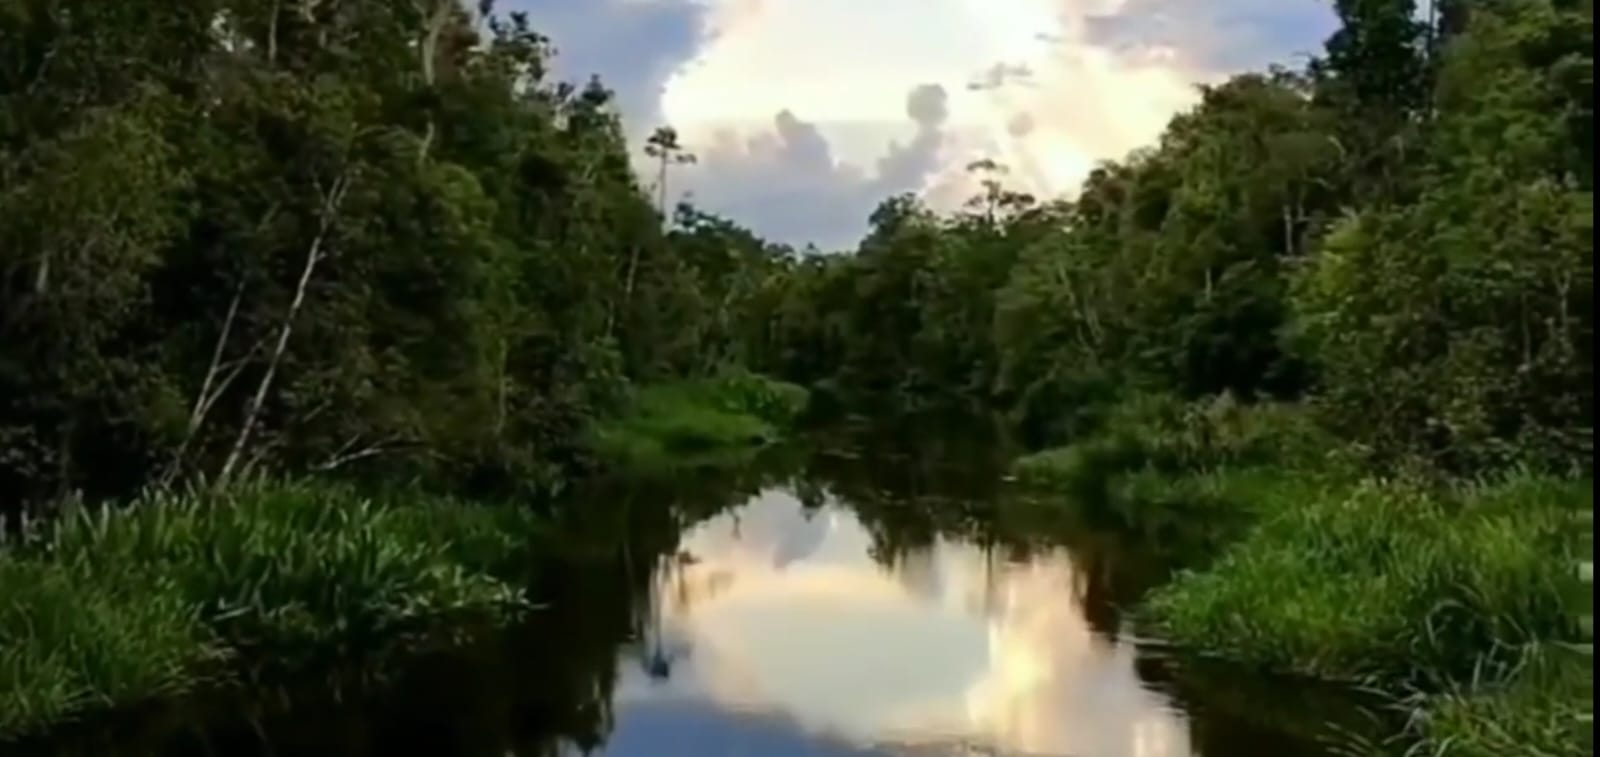  Taman Nasional Tanjung Puting, Rumah Bagi Satwa yang di Lindungi